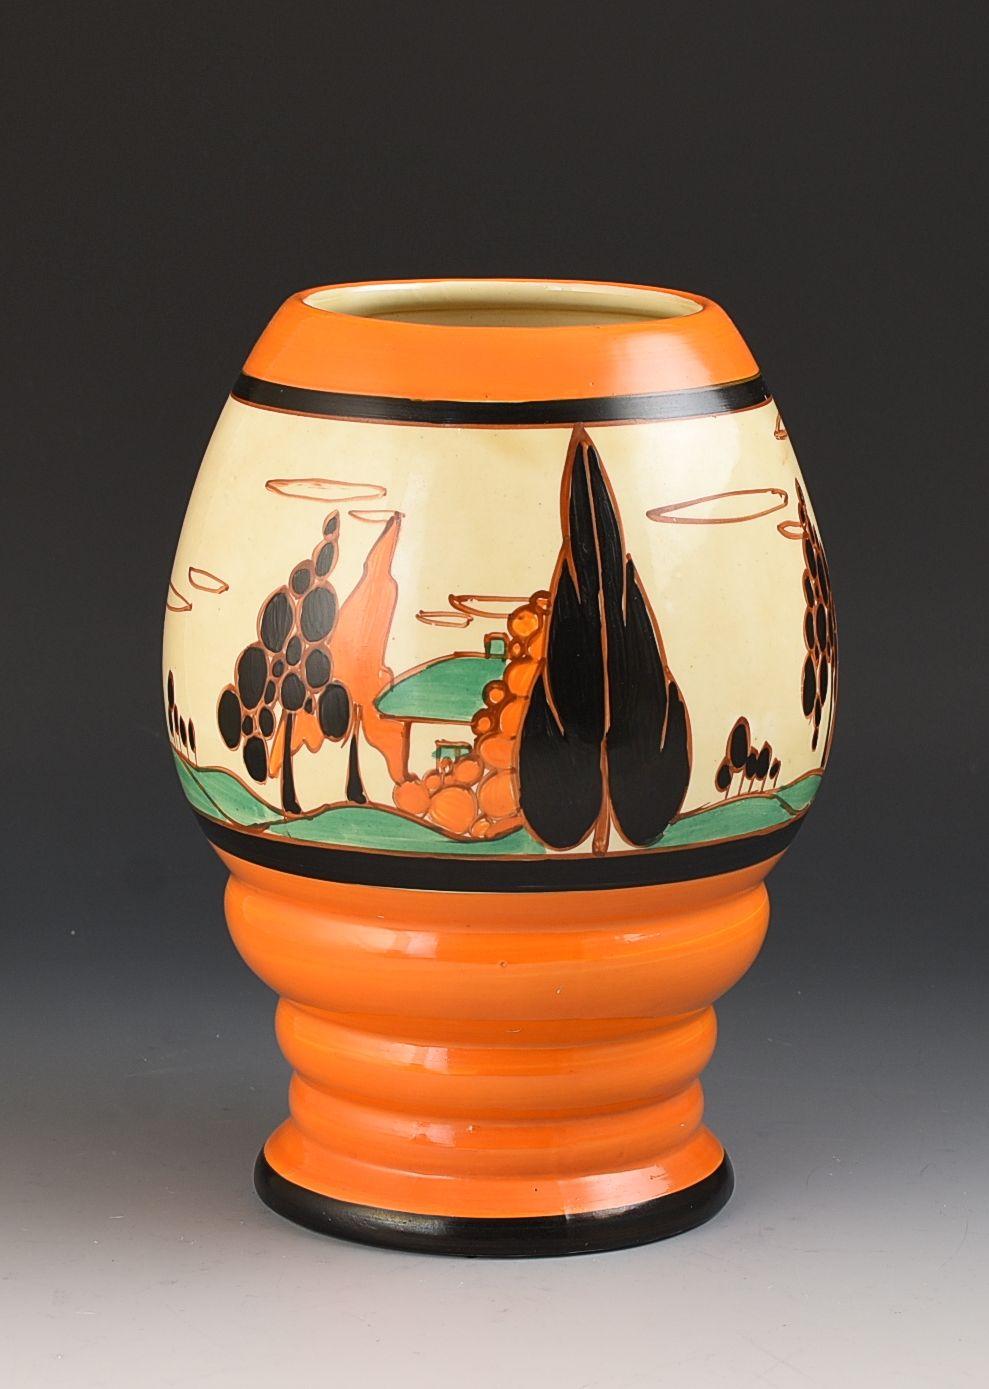 Eine herrliche Vase in Form 362 in einer frühen, kühnen Version von Trees & House. Sie stammt aus dem Jahr 1931 und zeigt eine perfekt gemalte, sich wiederholende Version des Musters um die Form herum. Die Farben sind sauber und abgesehen von ein